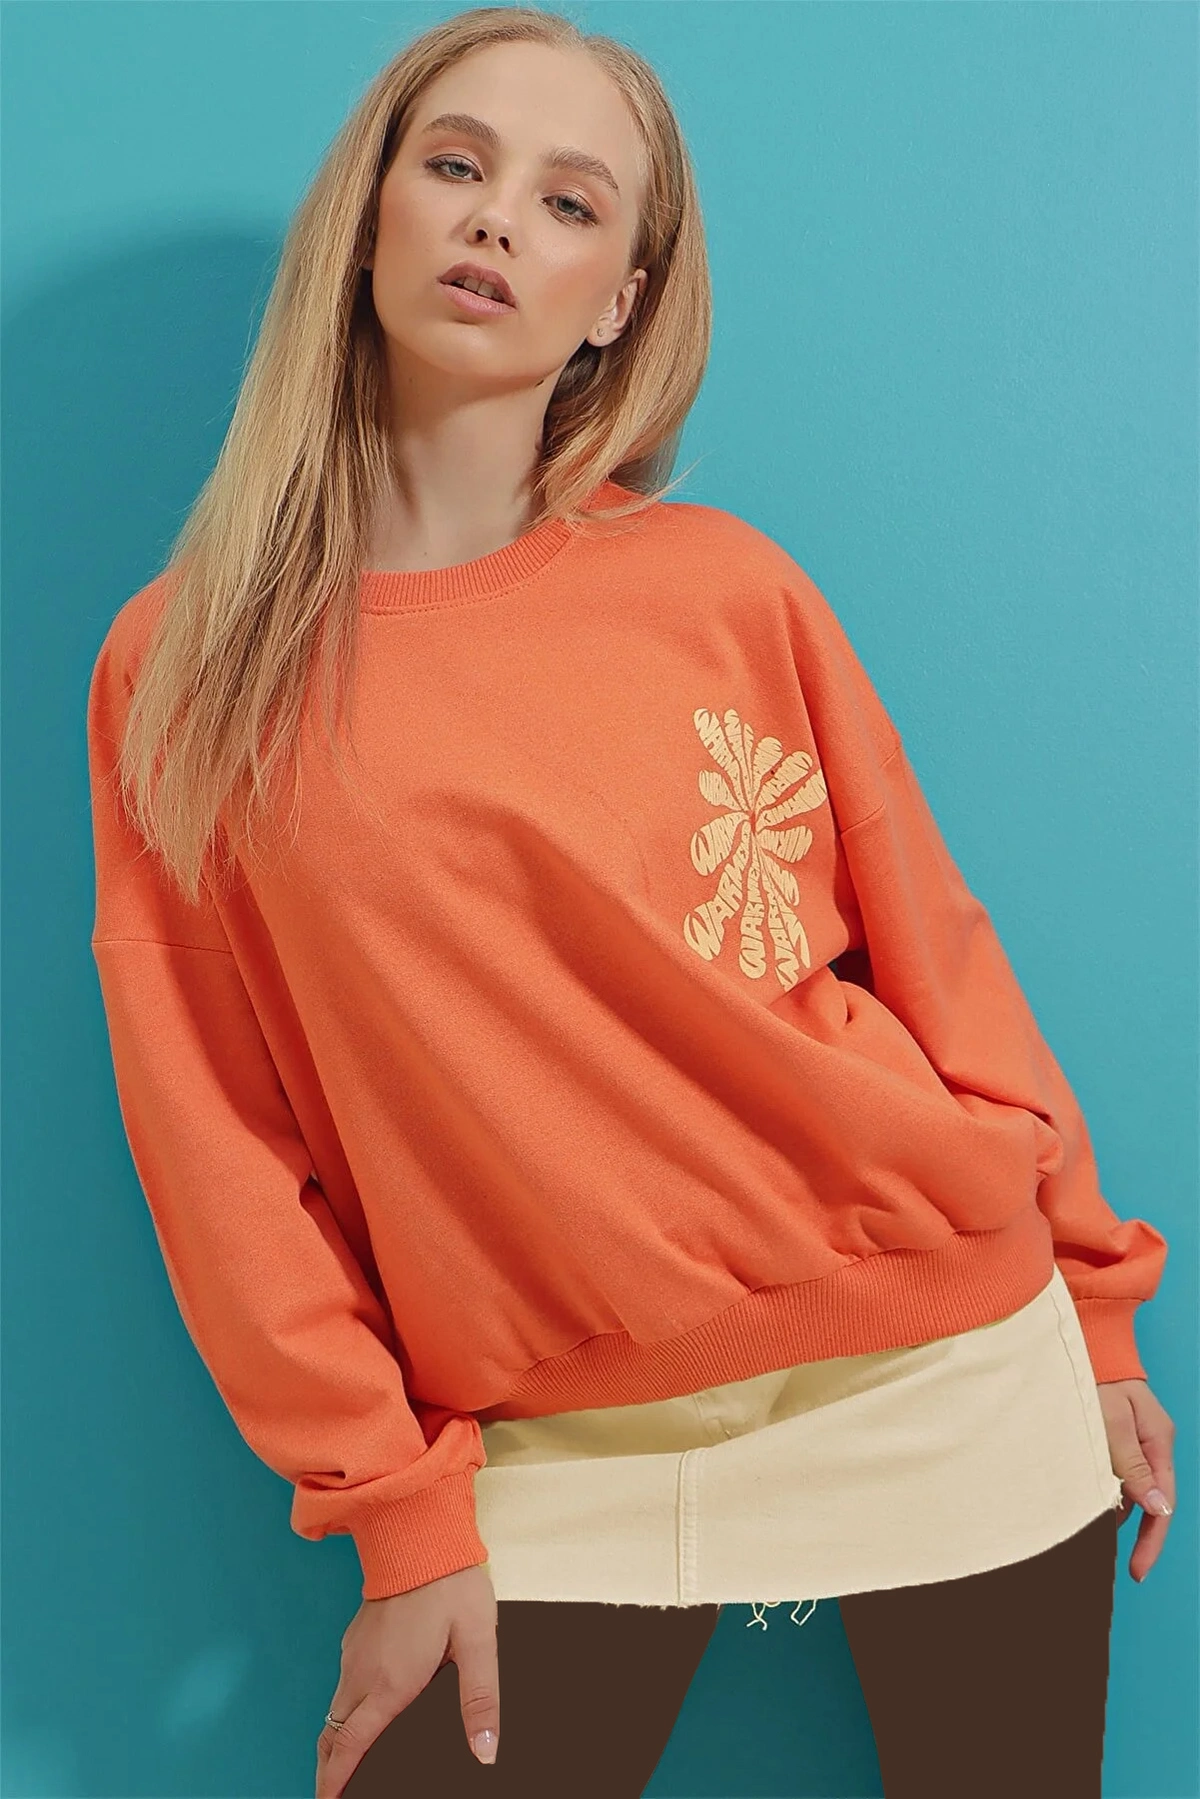 دورس اور سایز چاپ دار زنانه نارنجی برند Trend Alaçatı Stili